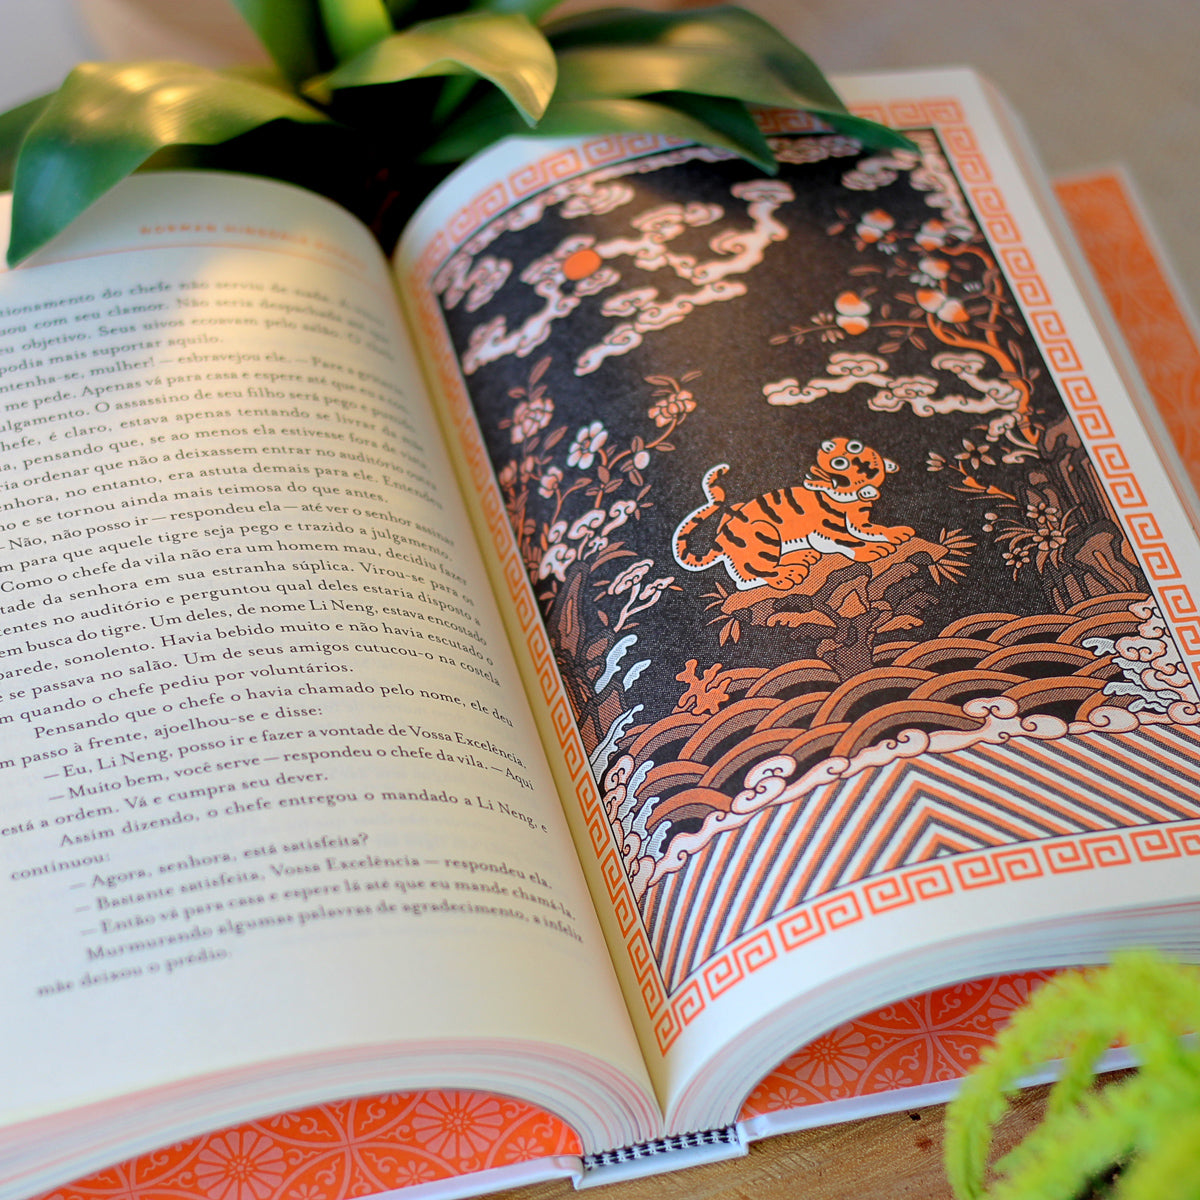 Fotografia de um livro aberto. Na esquerda, blocos de texto. Na direita, uma ilustração de página inteira com a imagem de um dragão.